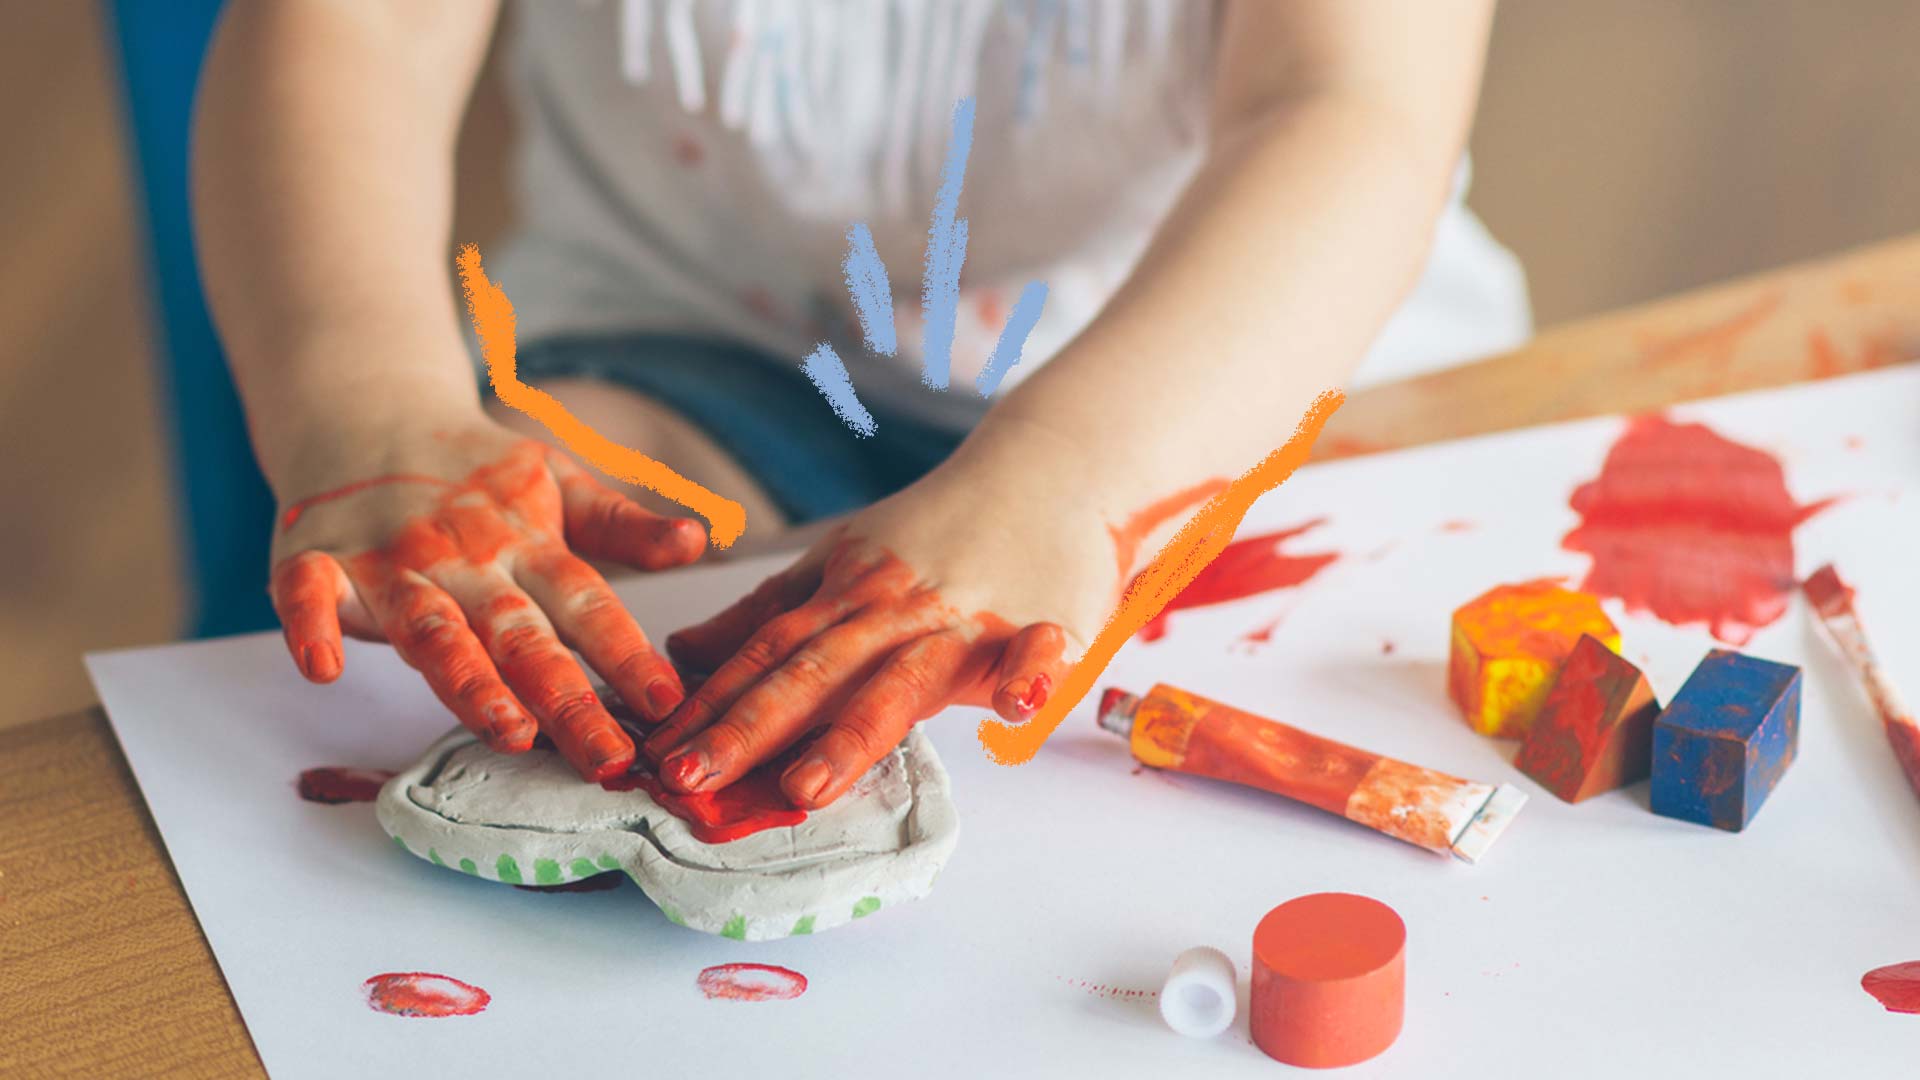 Como fazer tinta caseira: foto de uma criança que está com as mãos sujas de tinta e pinta em cima de uma mesa.